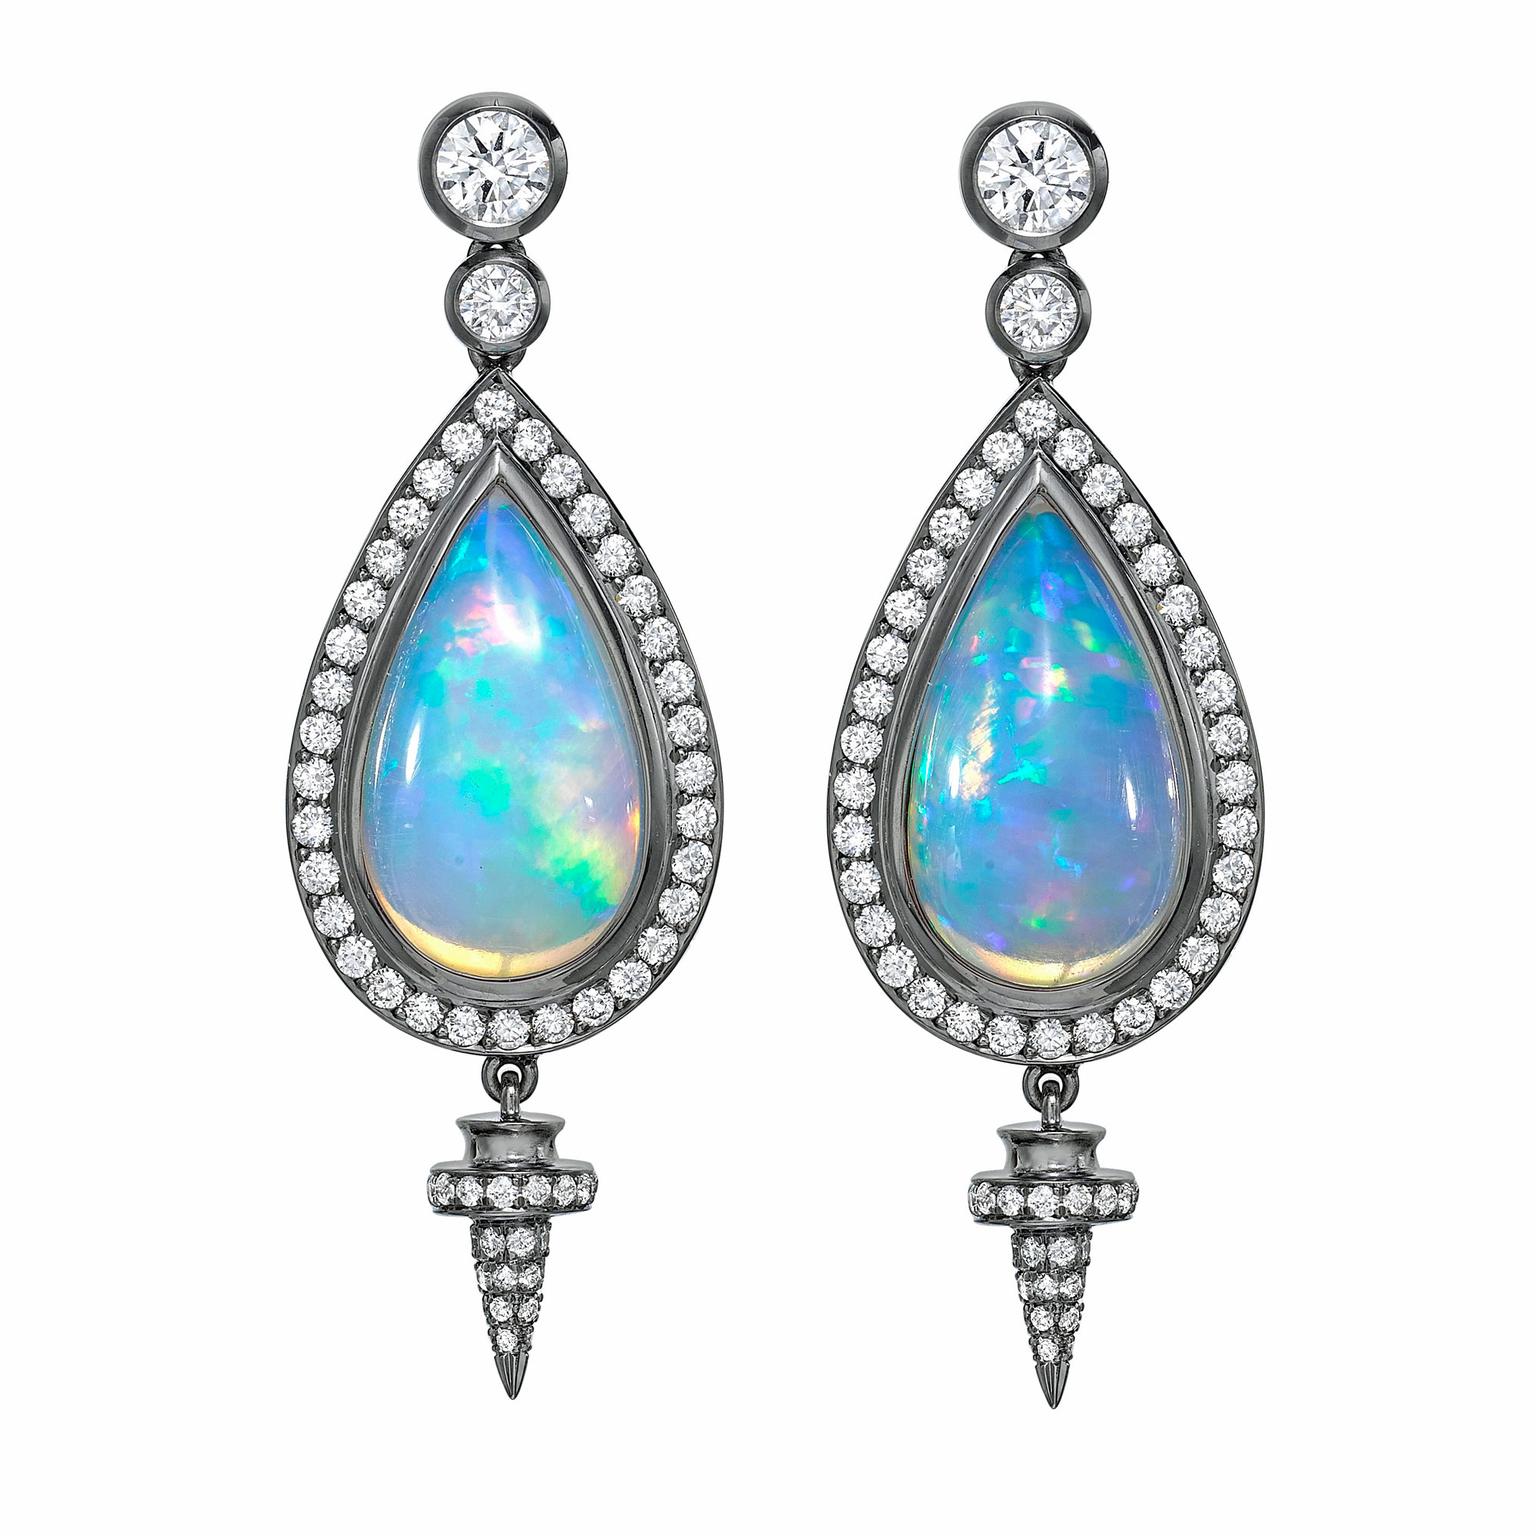 Theo Fennell opal earrings